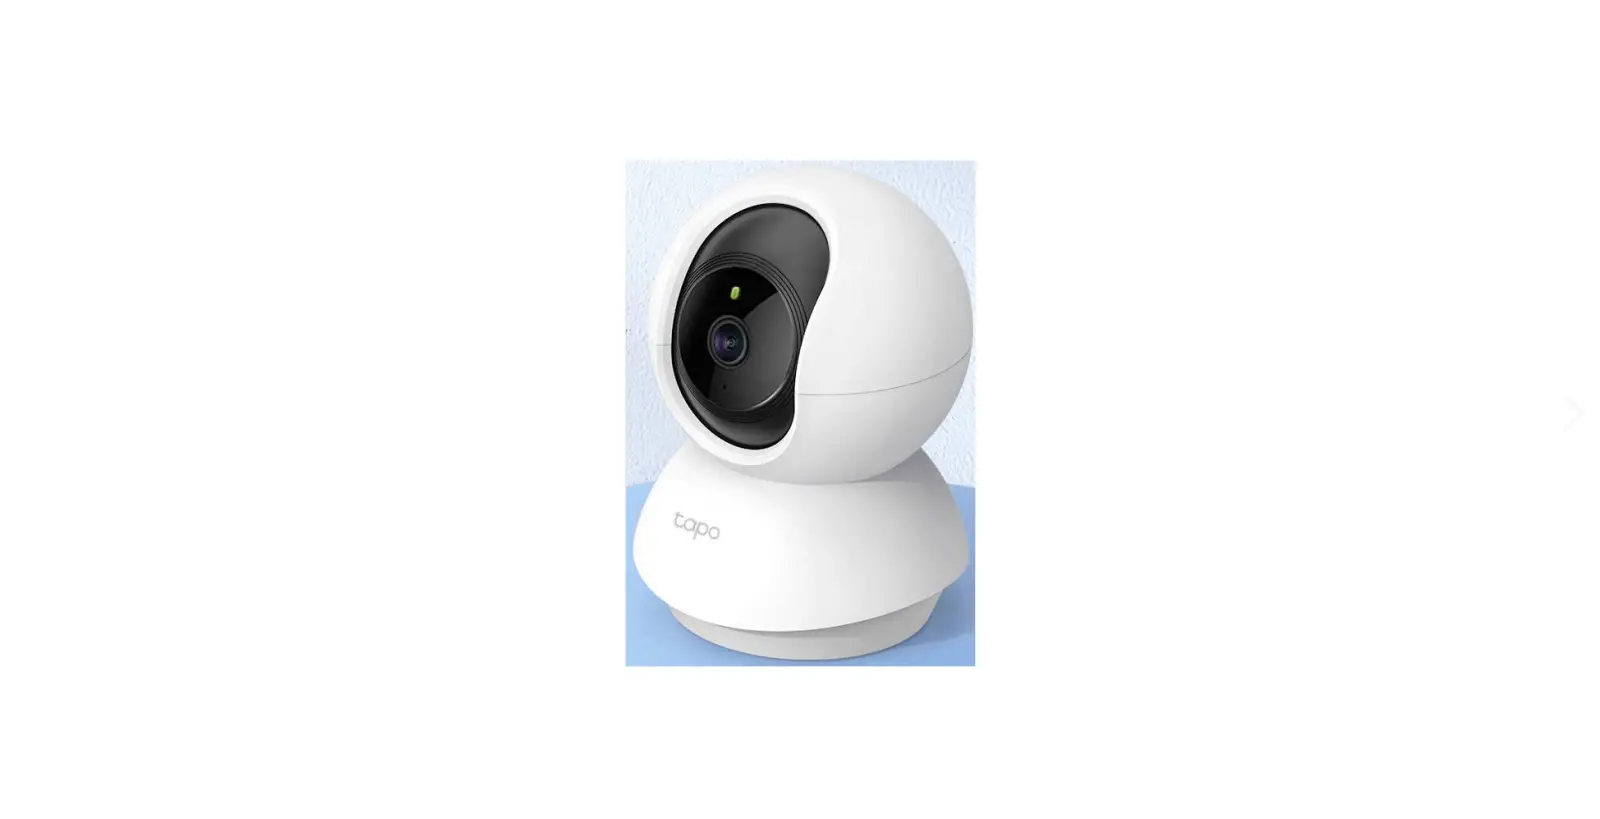 Tapo C210 Pan Tilt Home Security Wi-Fi Camera